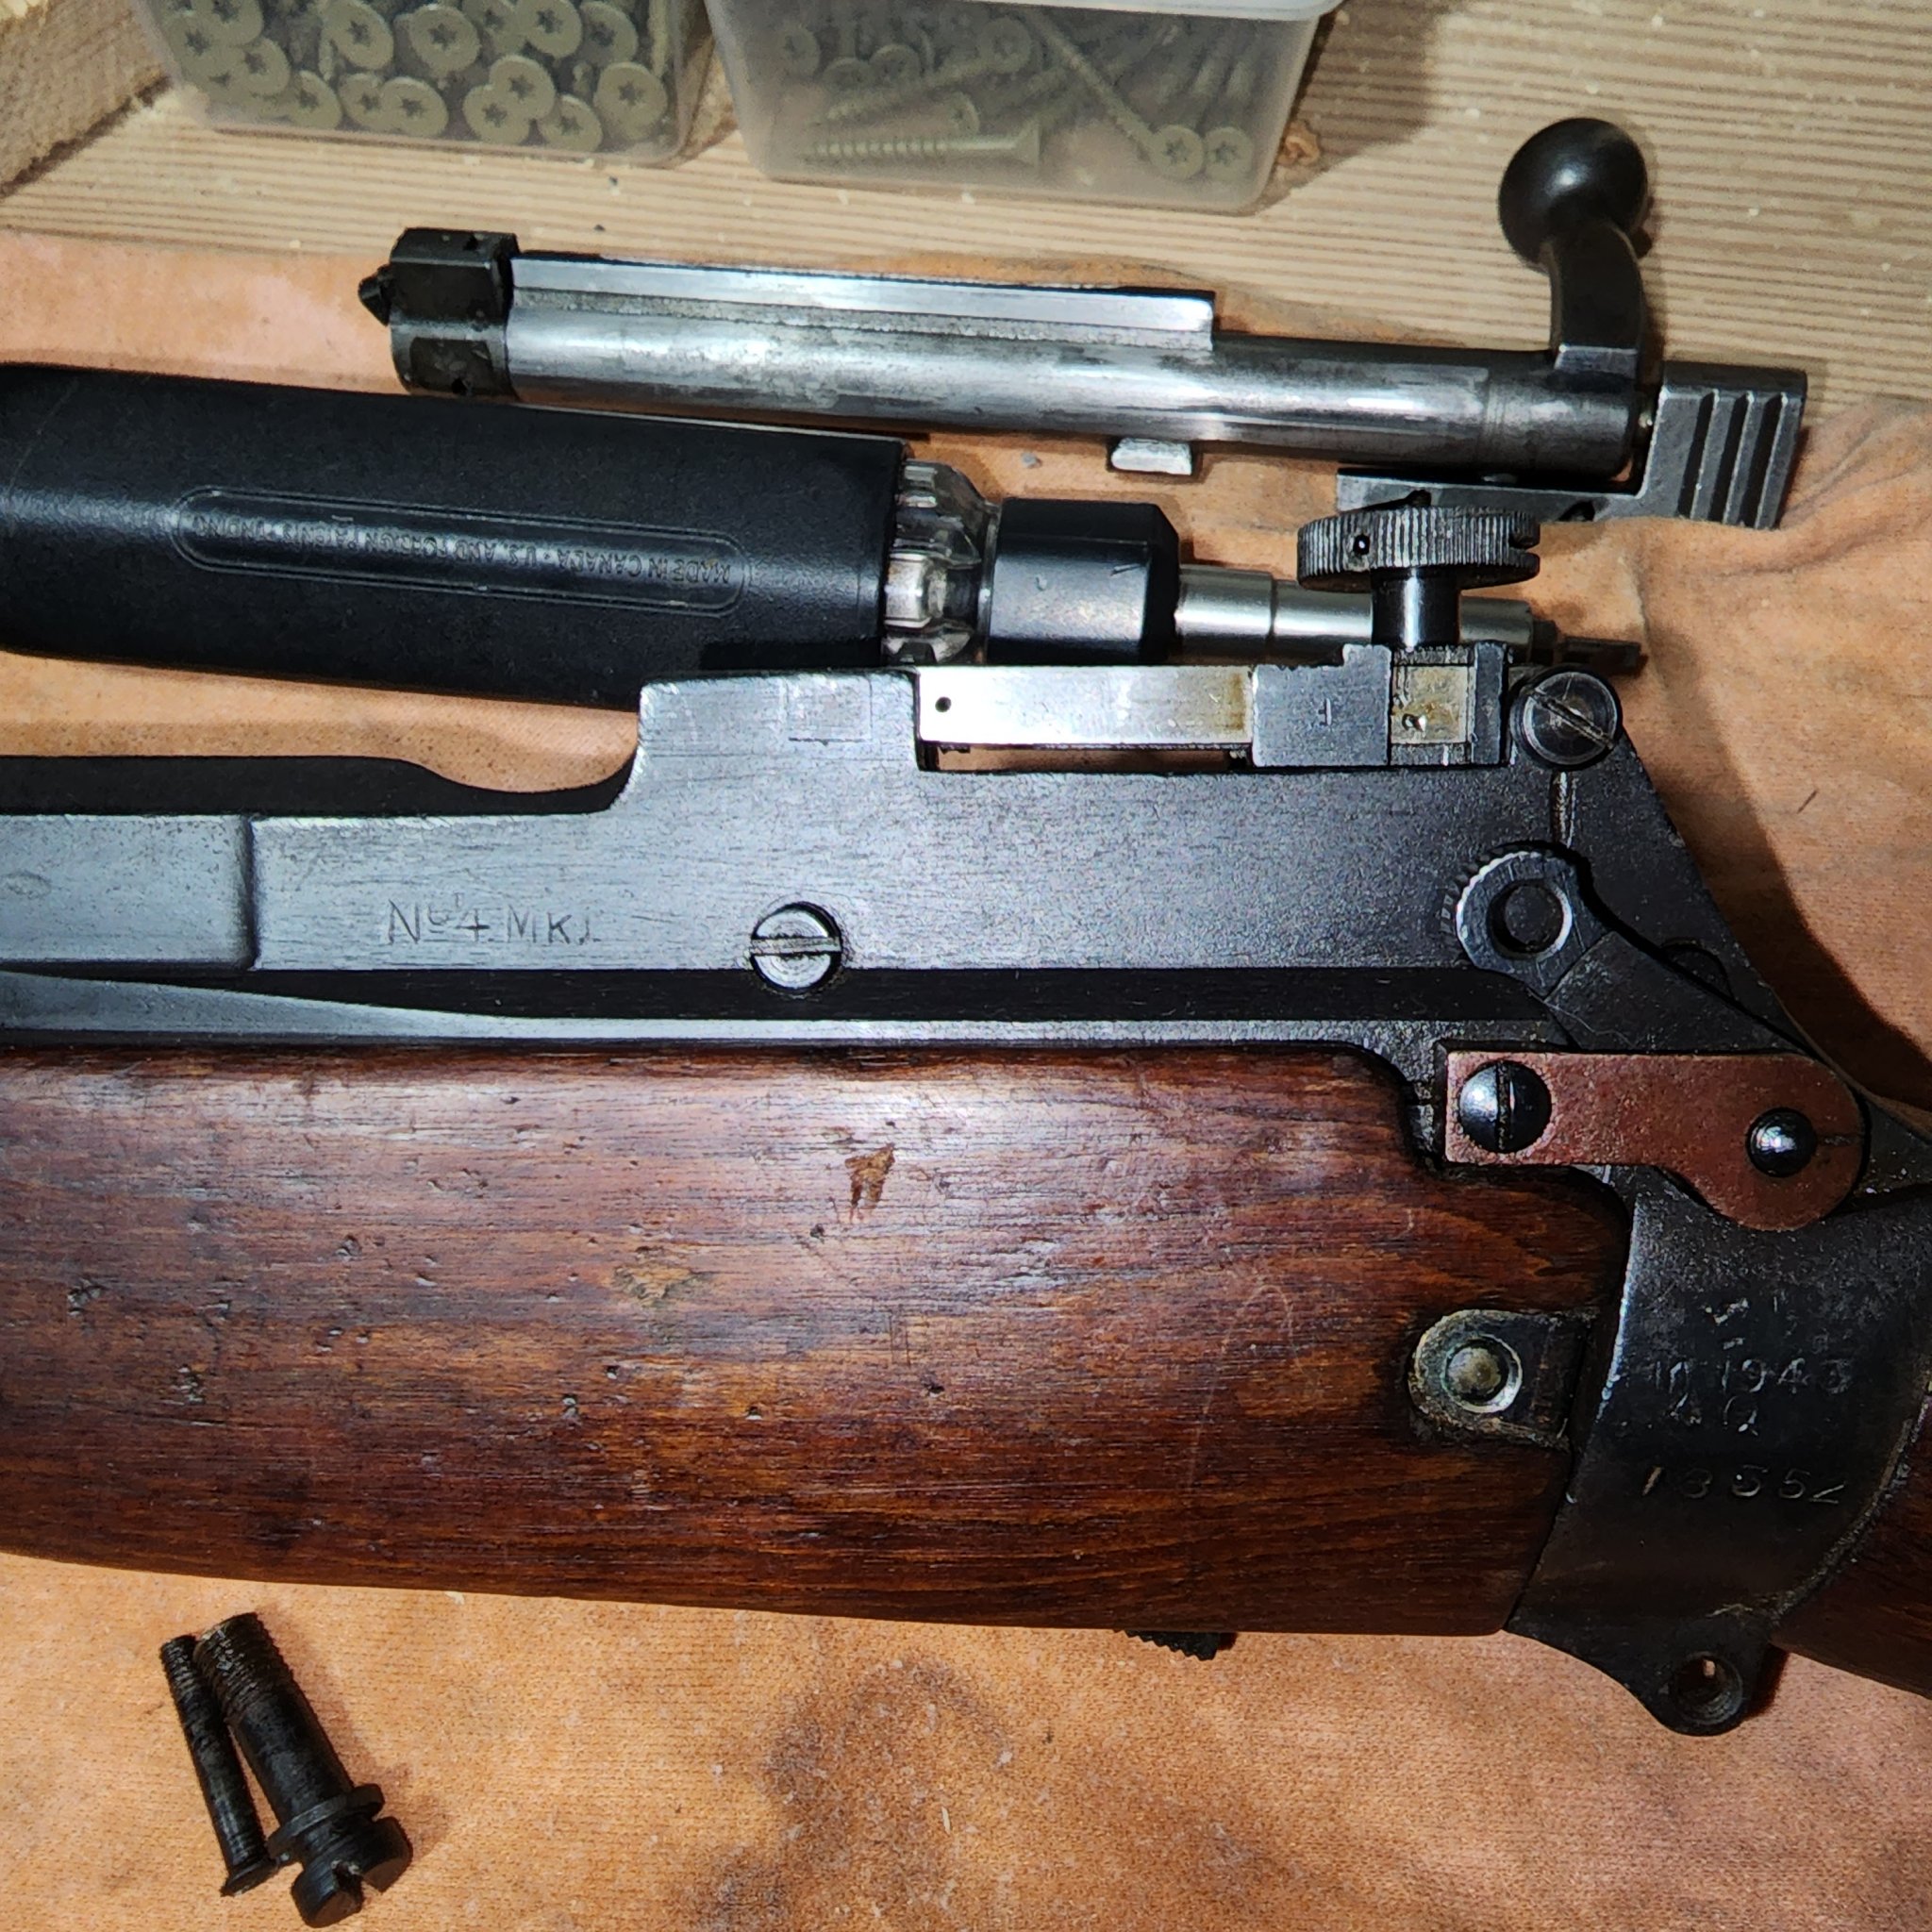 Lee Enfield No. 4 Mk 1* Long Branch 1943 parade rifle